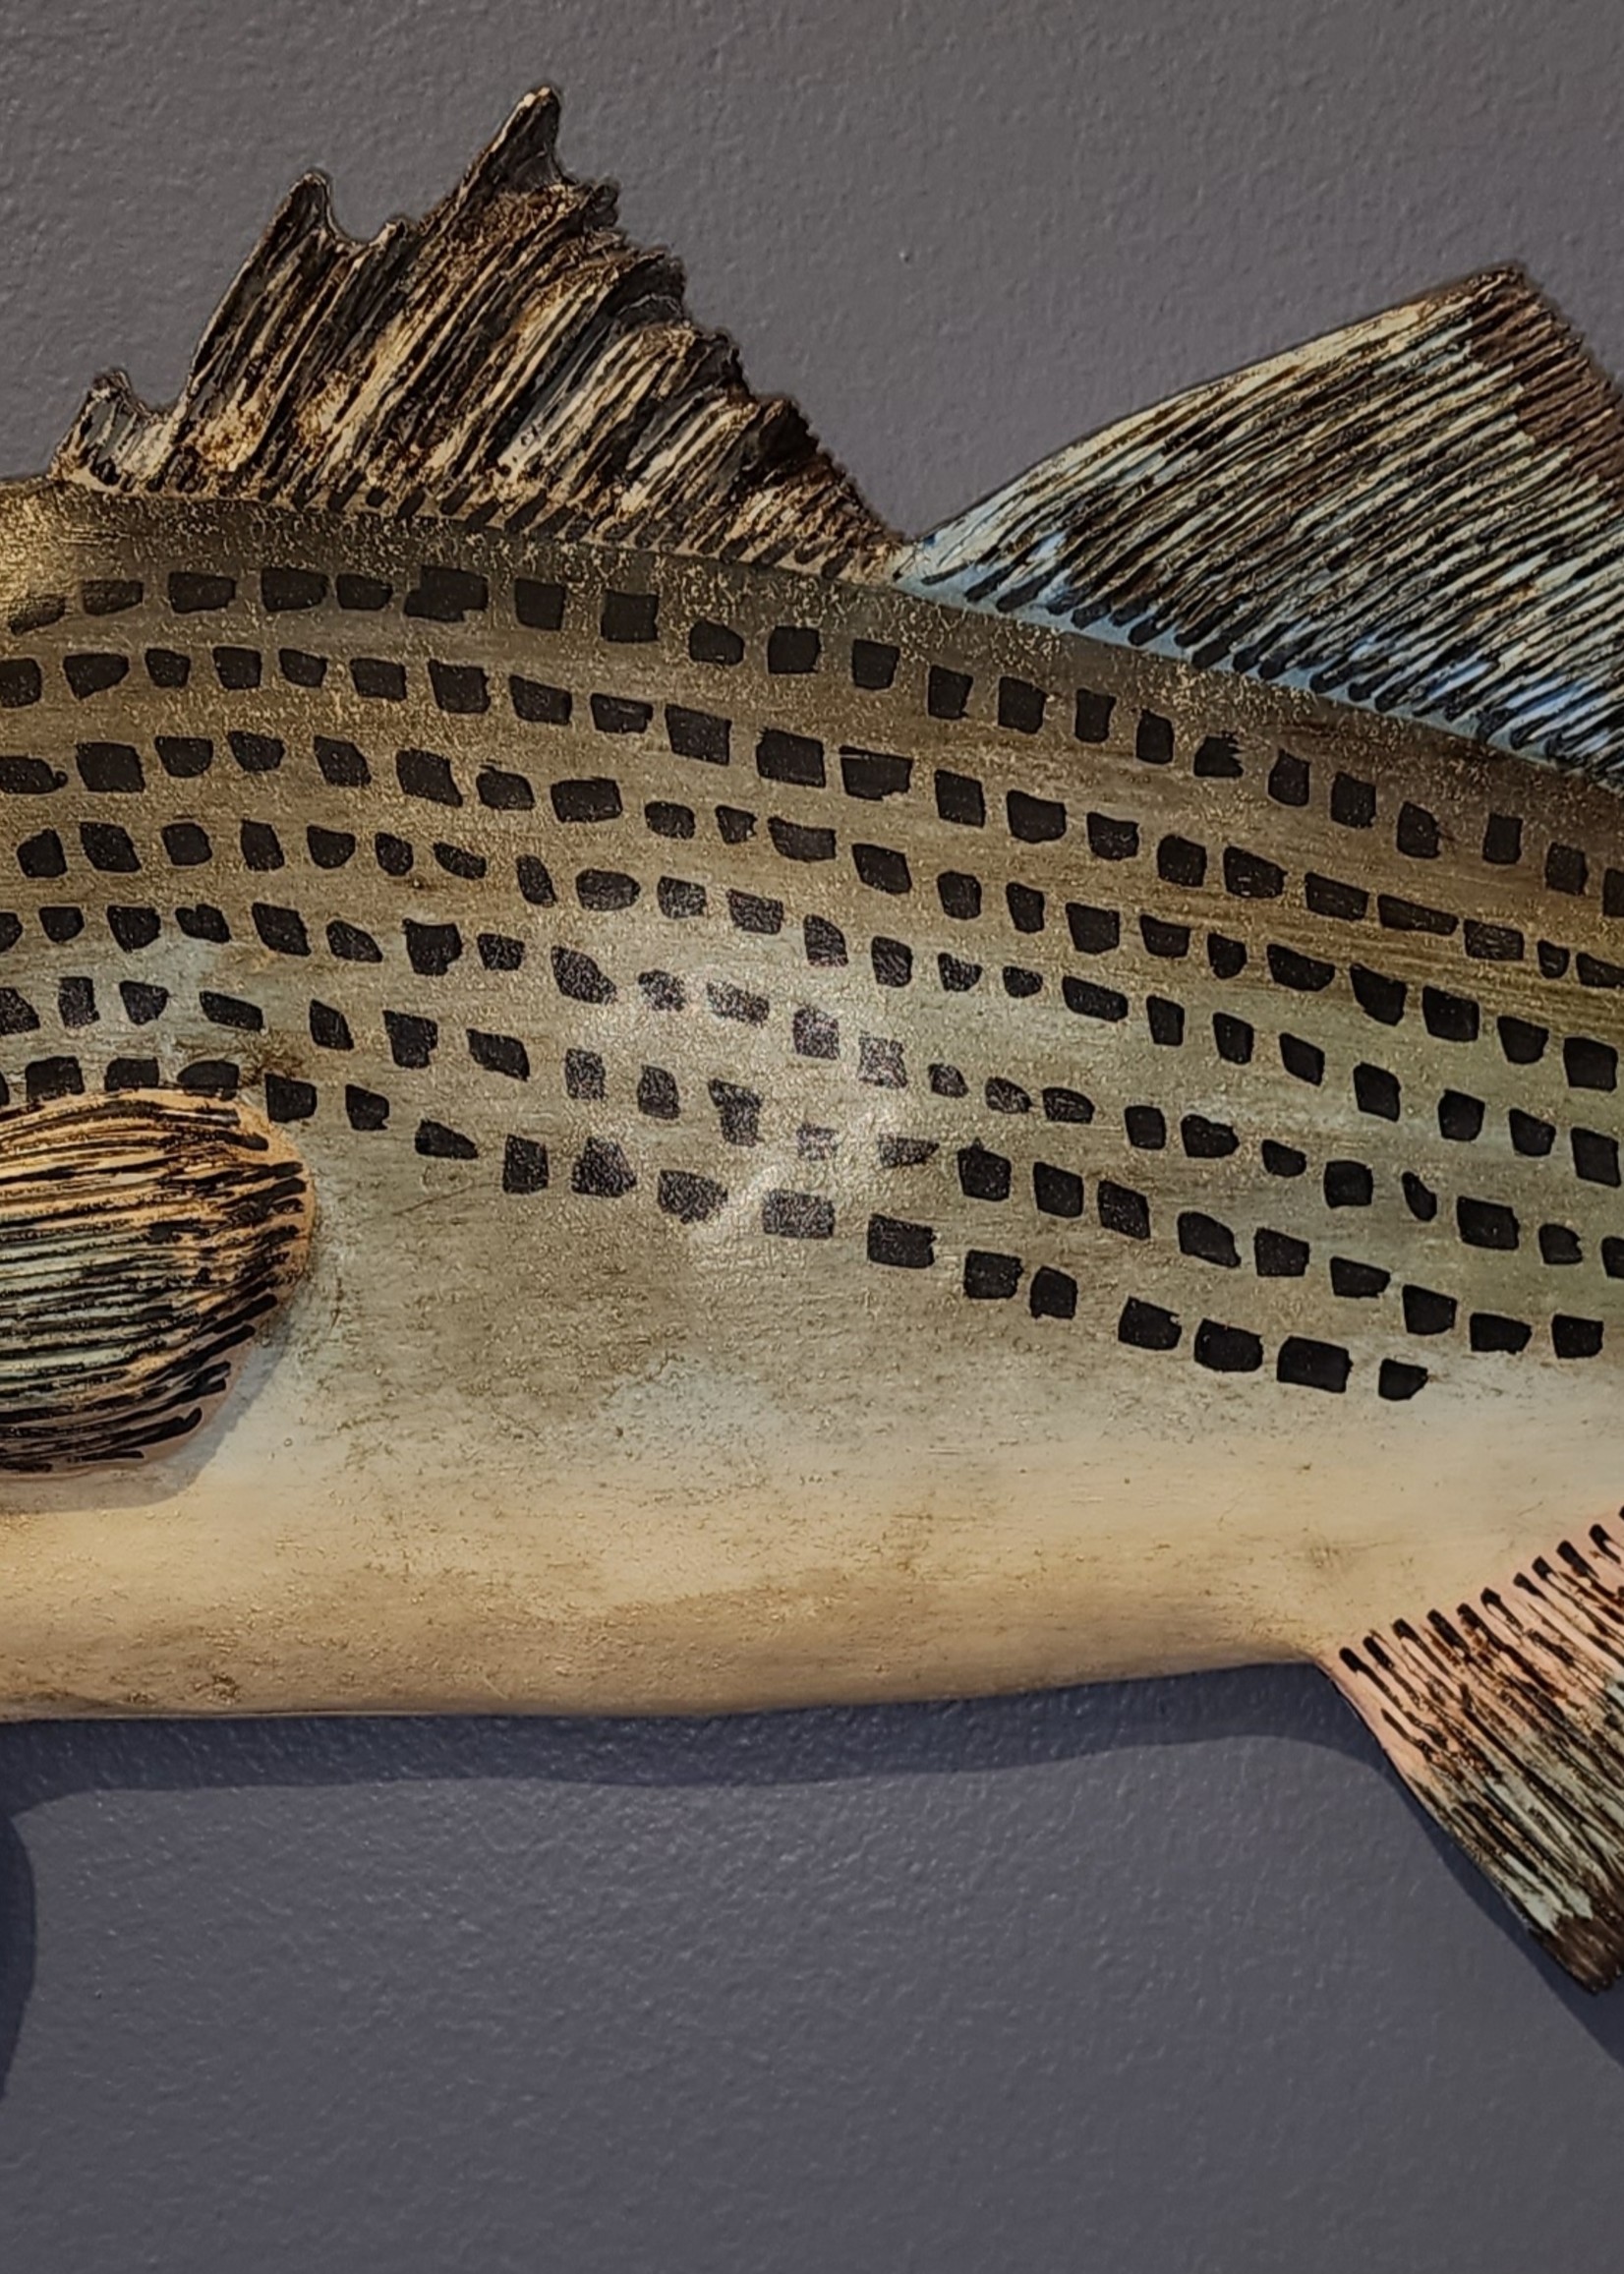 Ed Kuhn Carved Rockfish, large